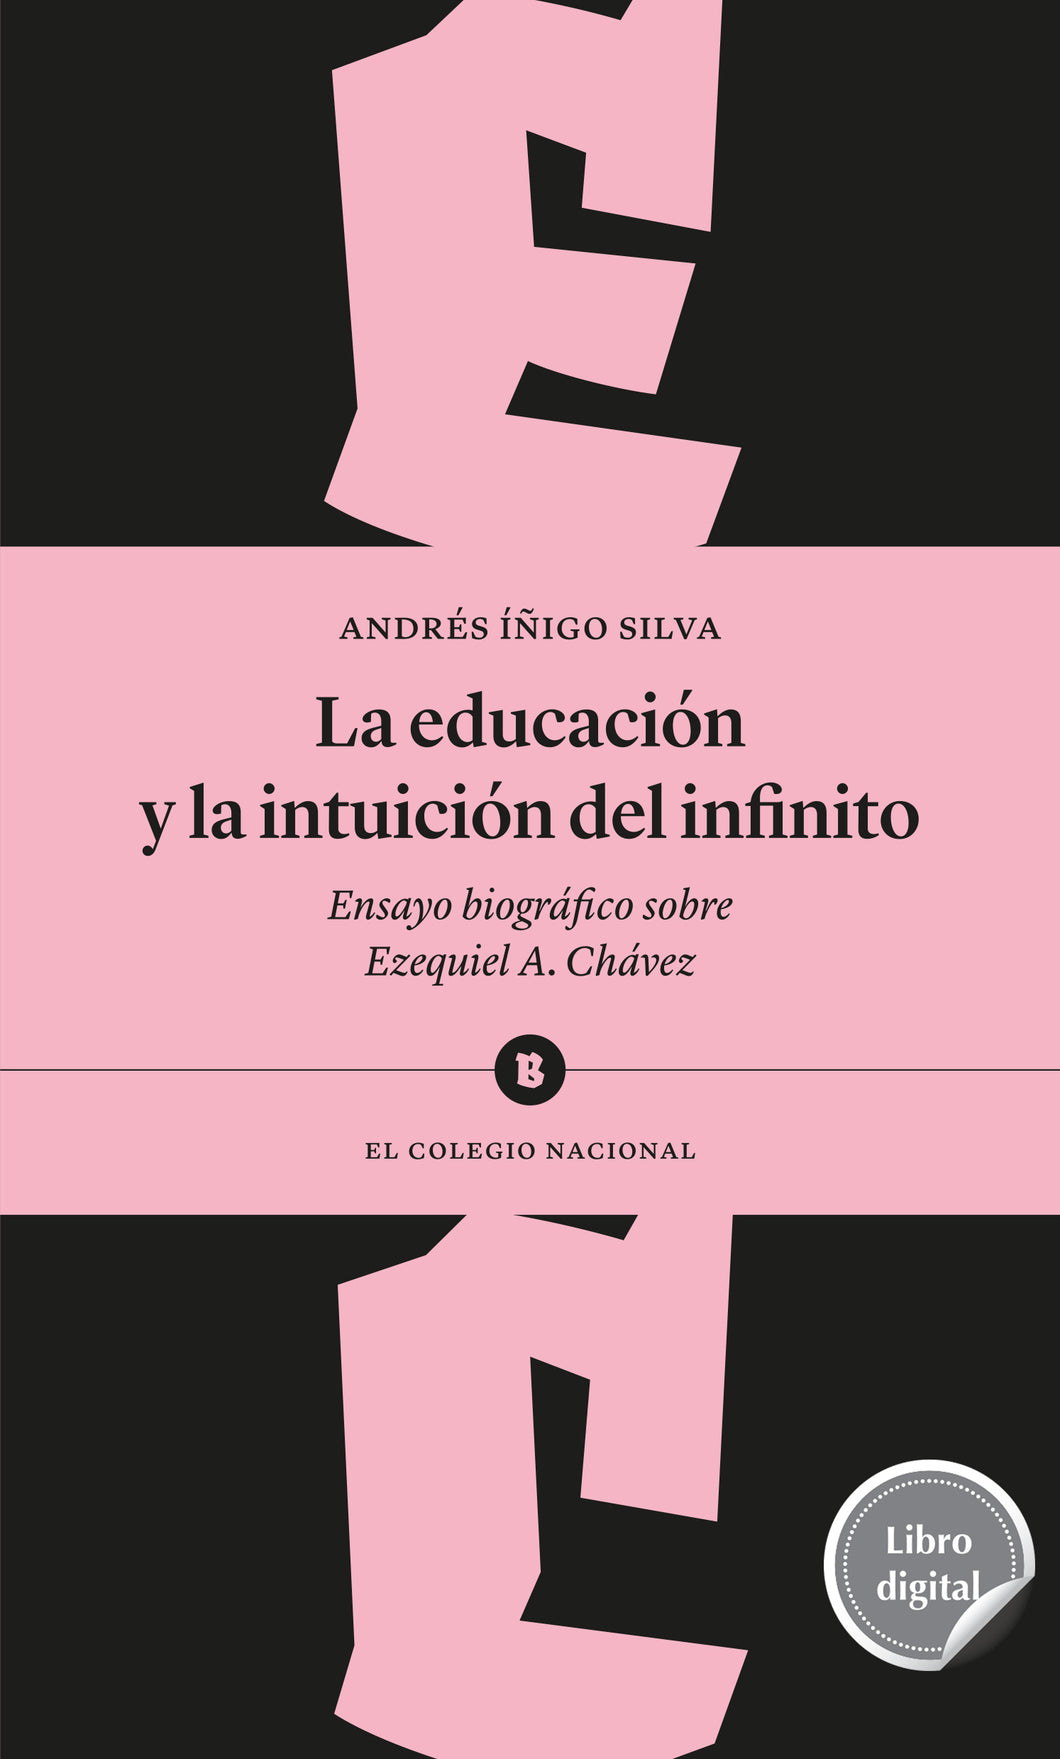 La educación y la intuición del infinito. Ensayo biográfico sobre Ezequiel A. Chávez